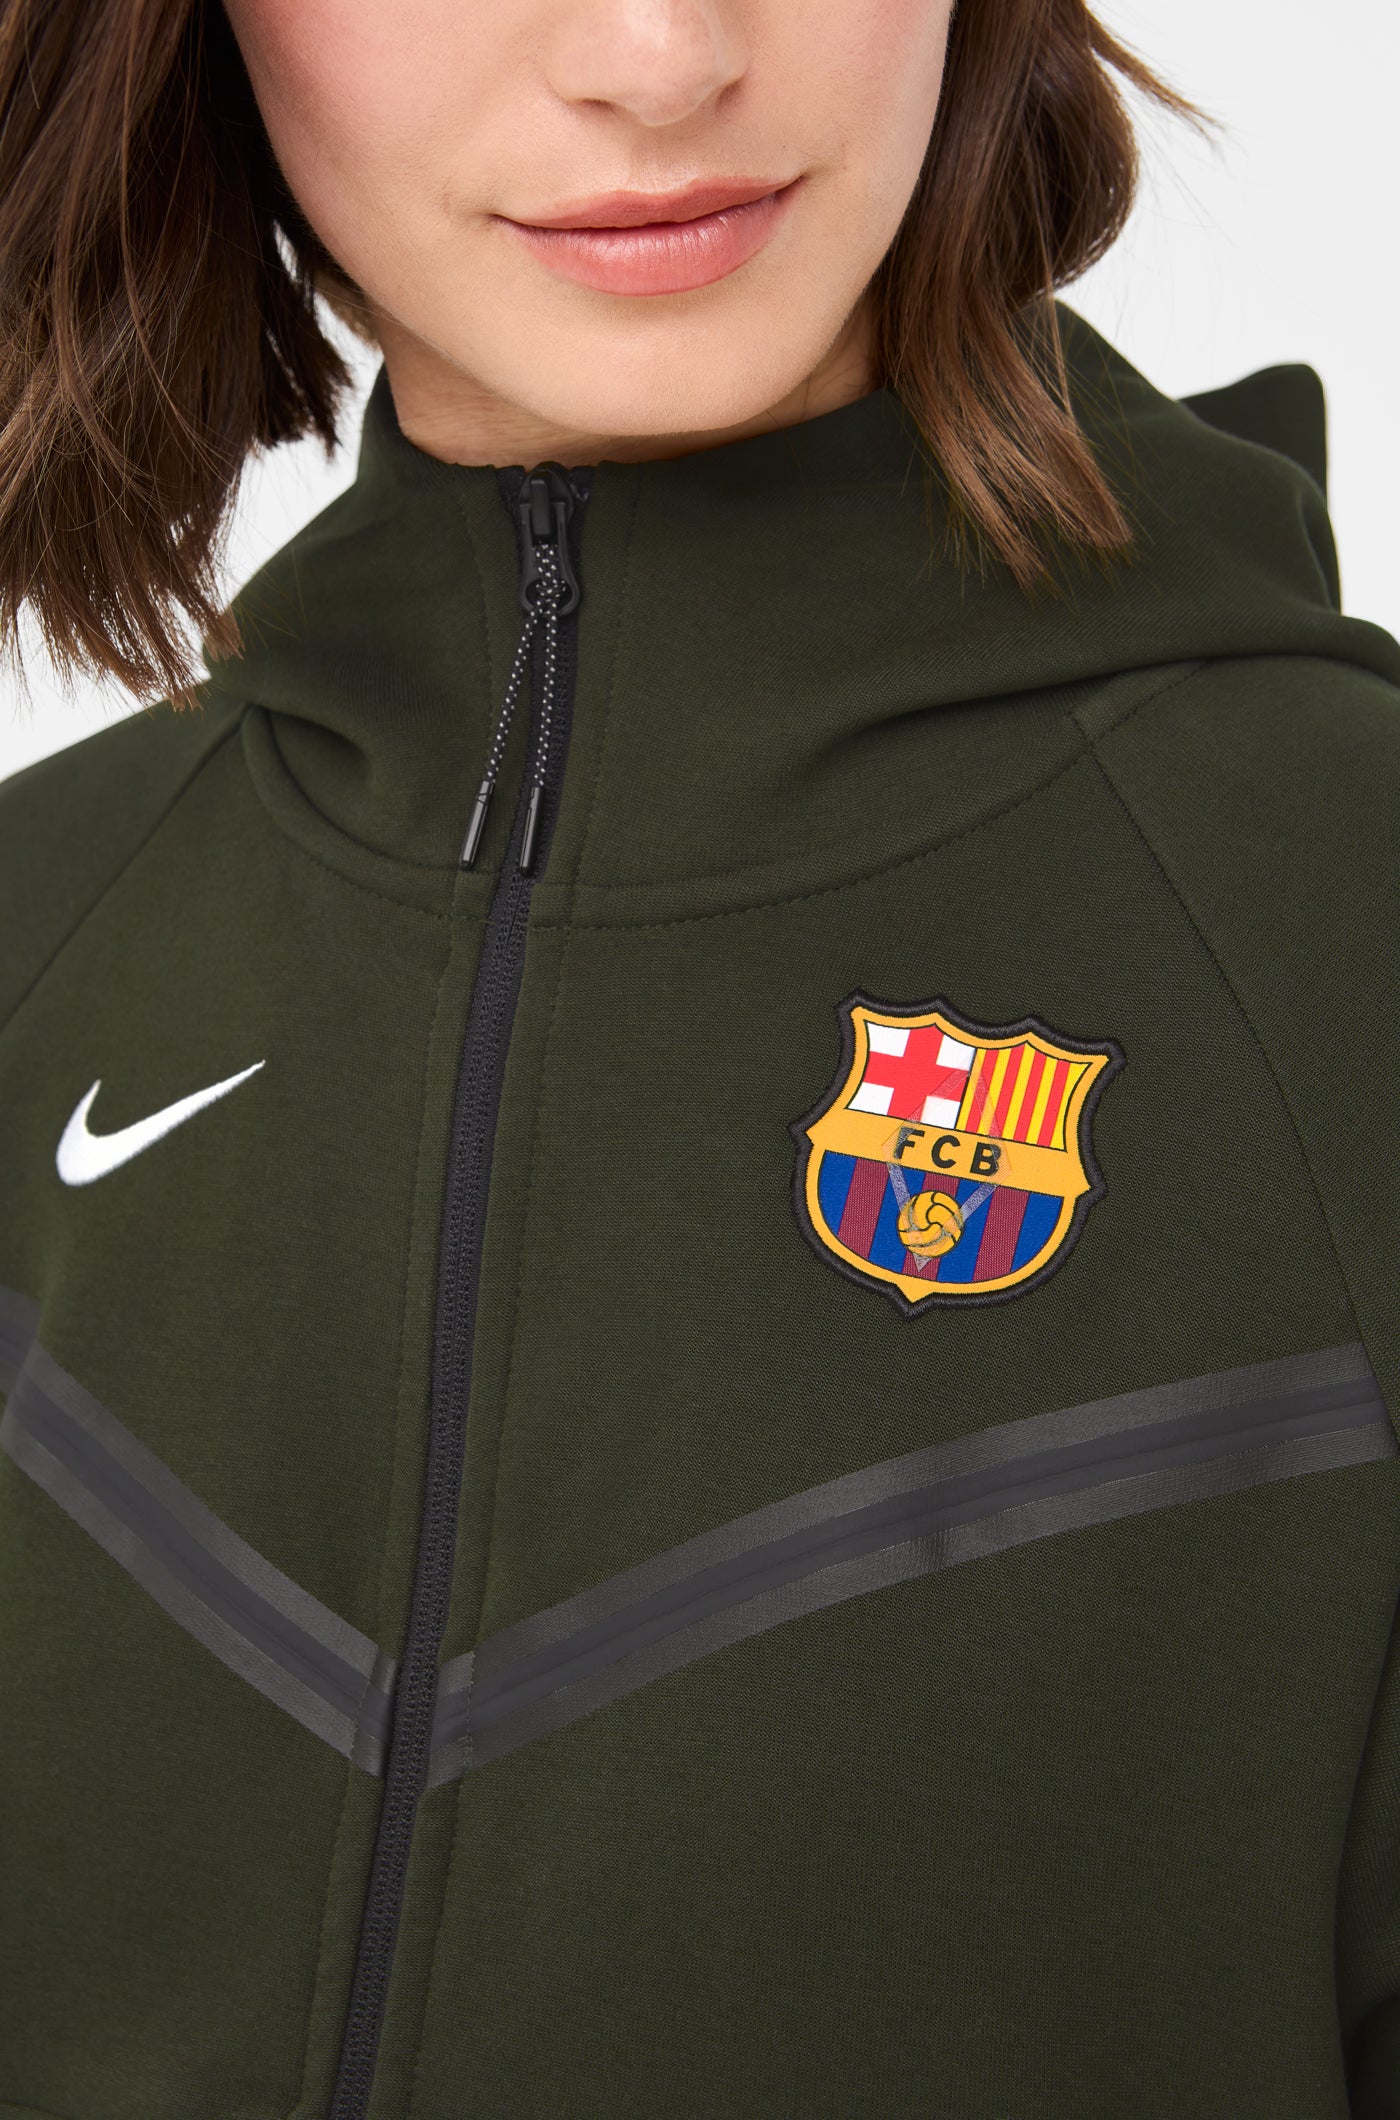 Tech Barça Nike Jacket - Women